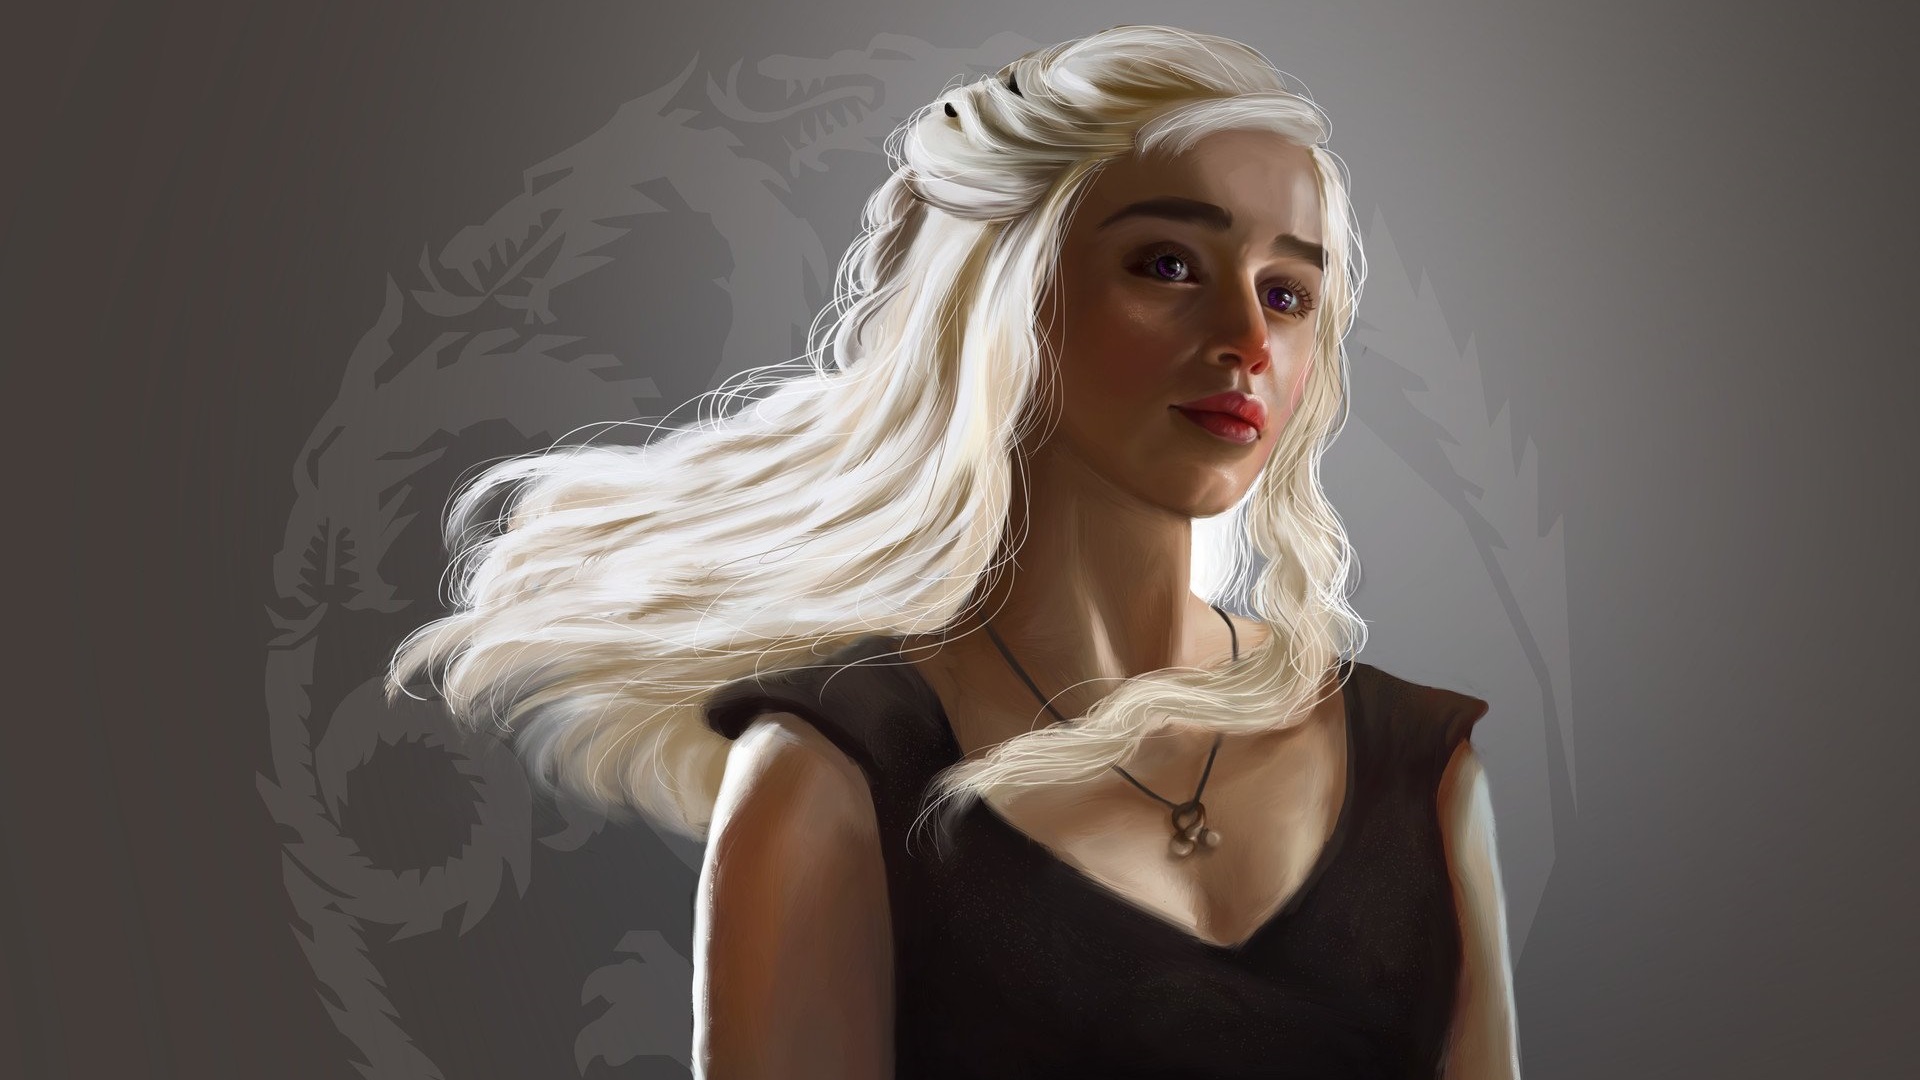 General 1920x1080 Daenerys Targaryen Game of Thrones House Targaryen sigils dragon artwork women blonde long hair fan art Emilia Clarke TV series actress